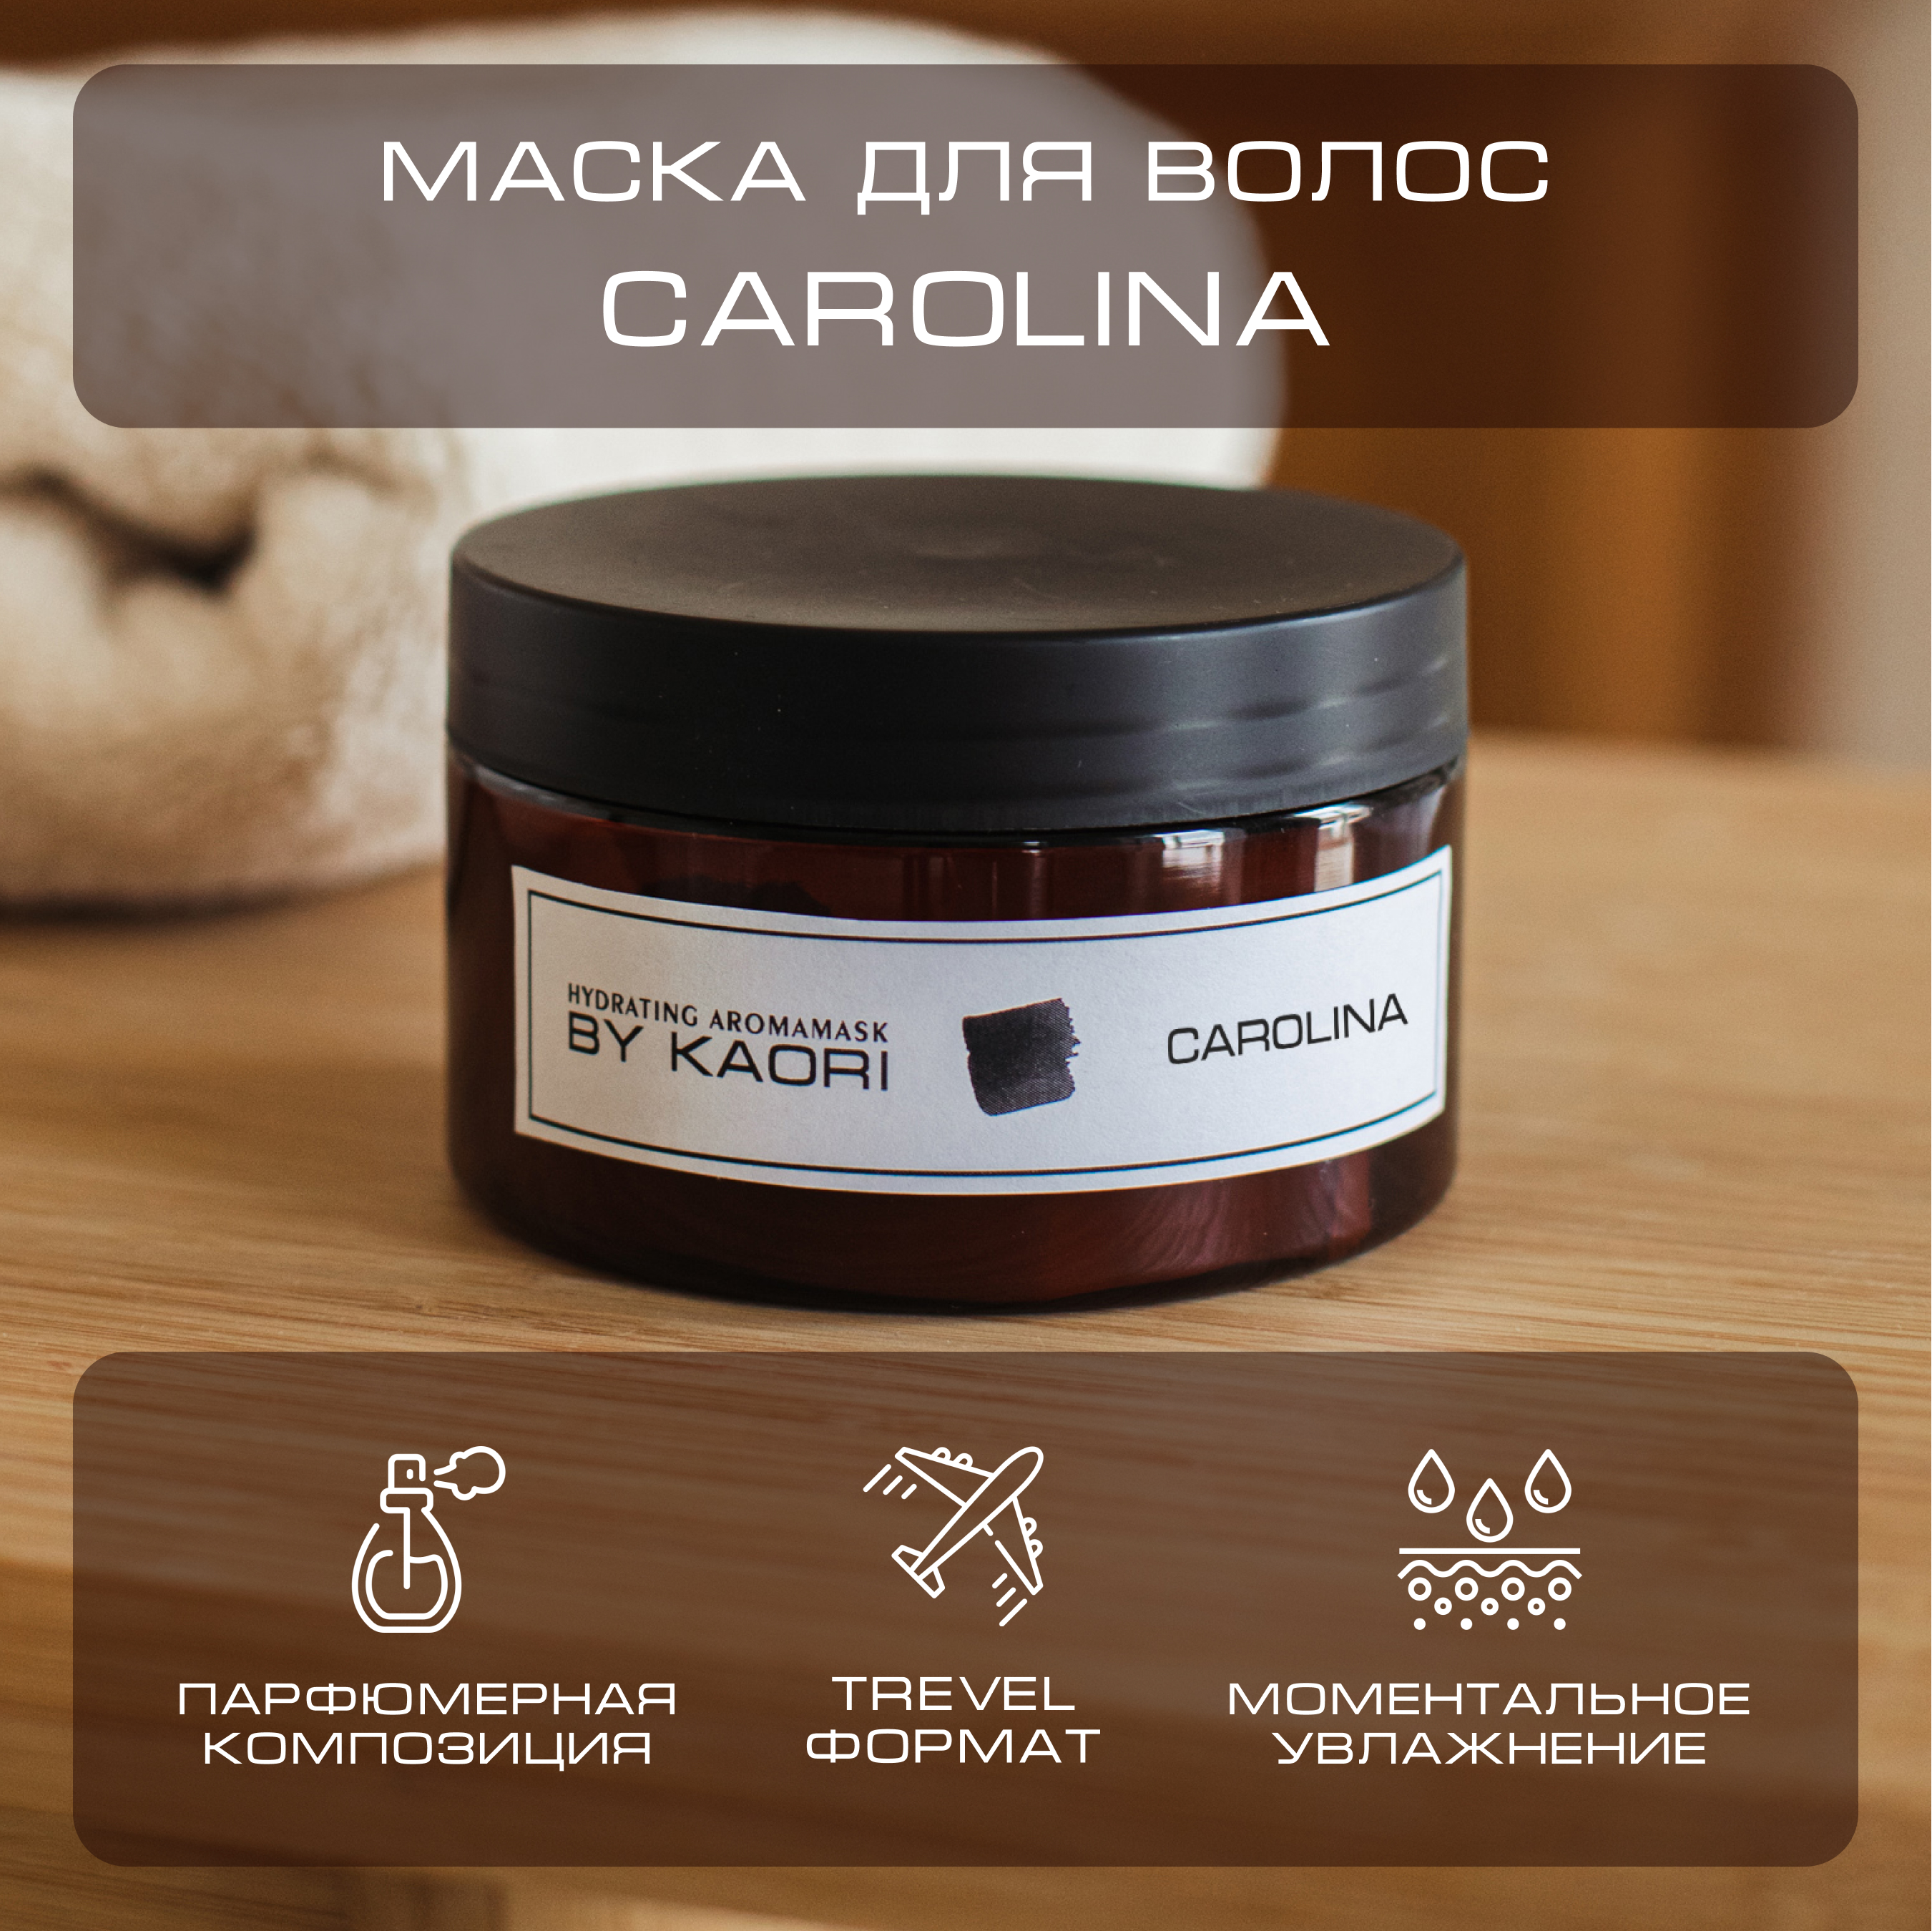 Интенсивная питательная маска для волос By Kaori тревел-формат аромат Carolina 100 мл